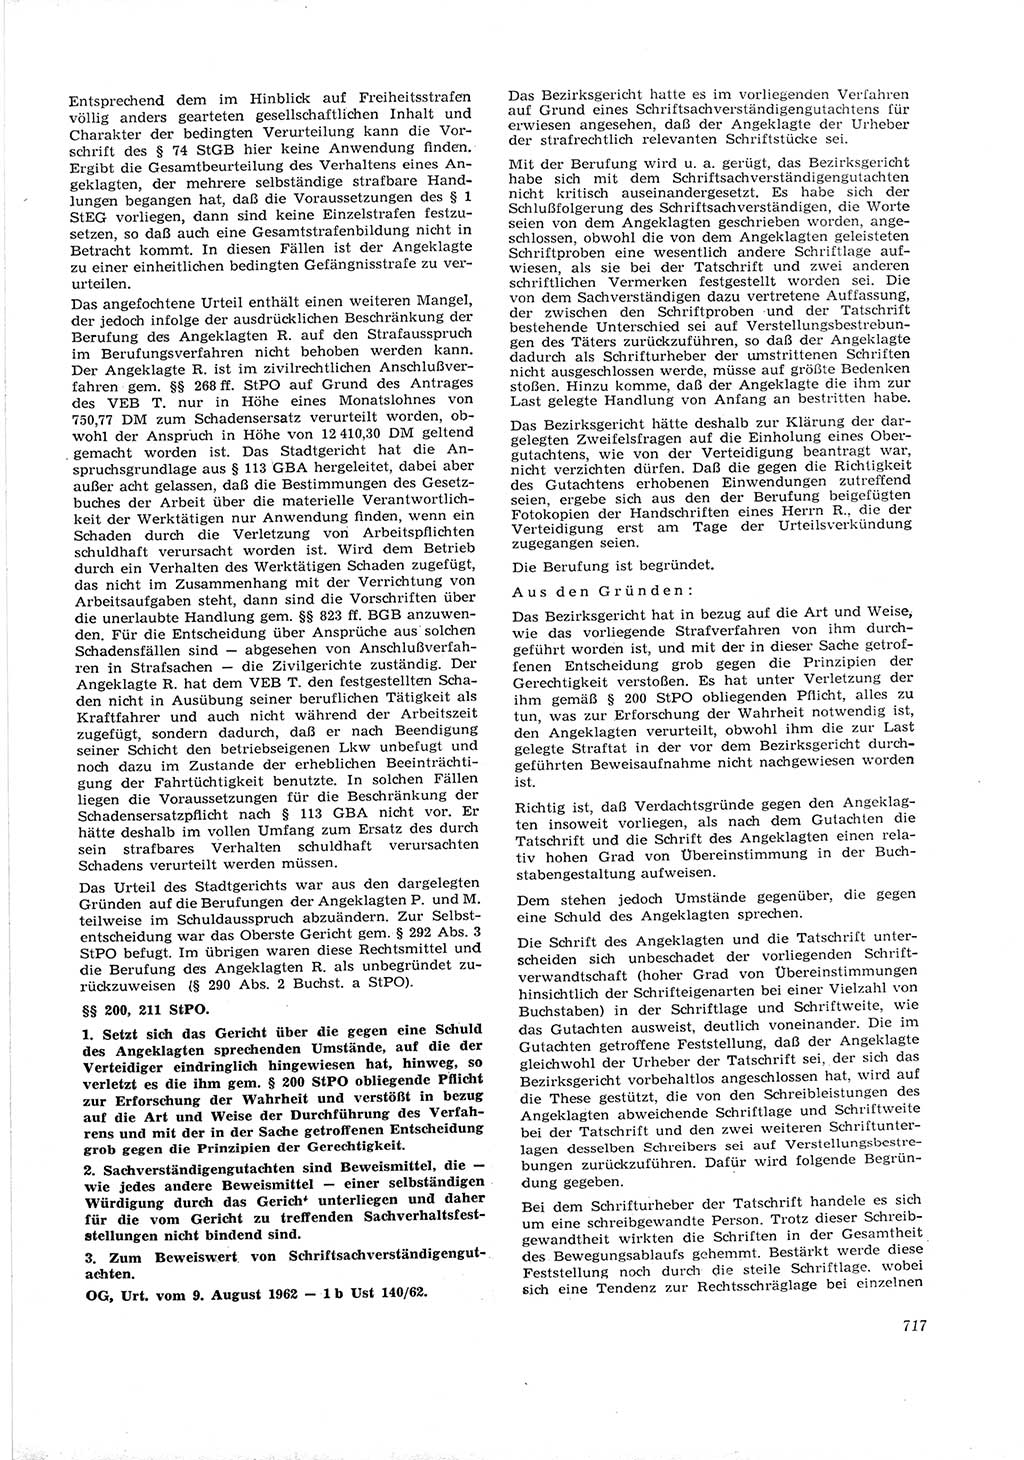 Neue Justiz (NJ), Zeitschrift für Recht und Rechtswissenschaft [Deutsche Demokratische Republik (DDR)], 16. Jahrgang 1962, Seite 717 (NJ DDR 1962, S. 717)